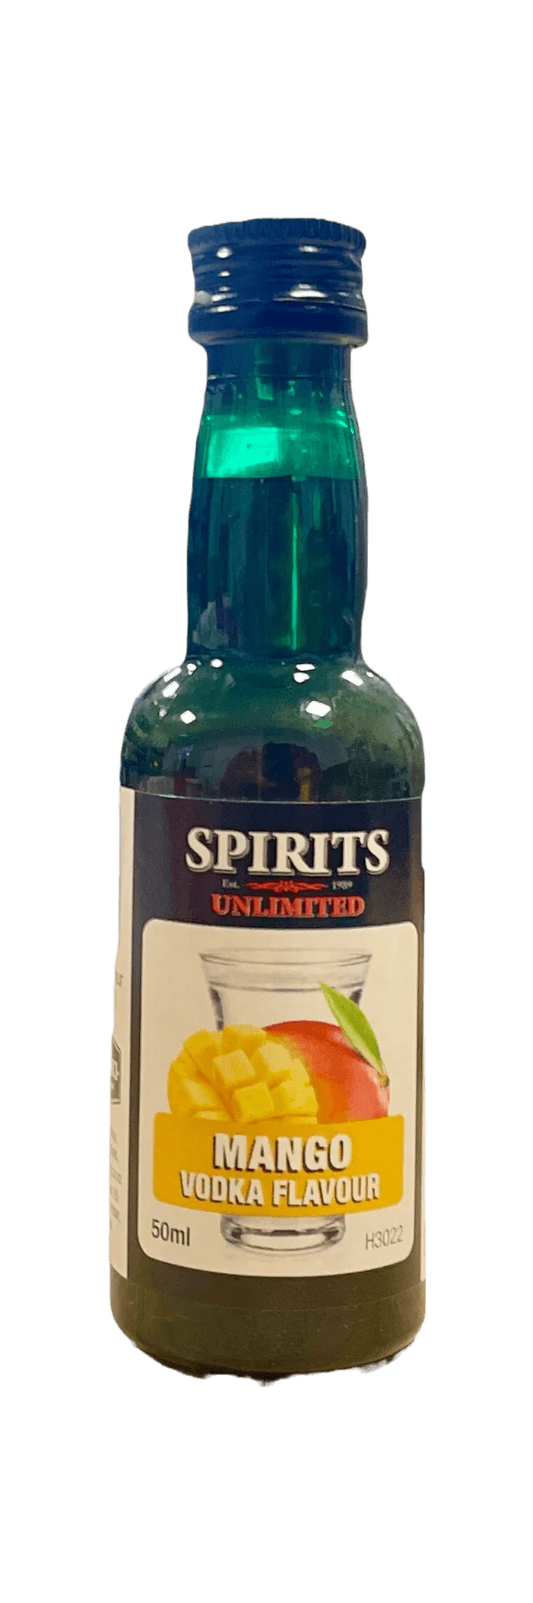 Spirits Unlimited Mango Vodka Spirit Flavour 50ml